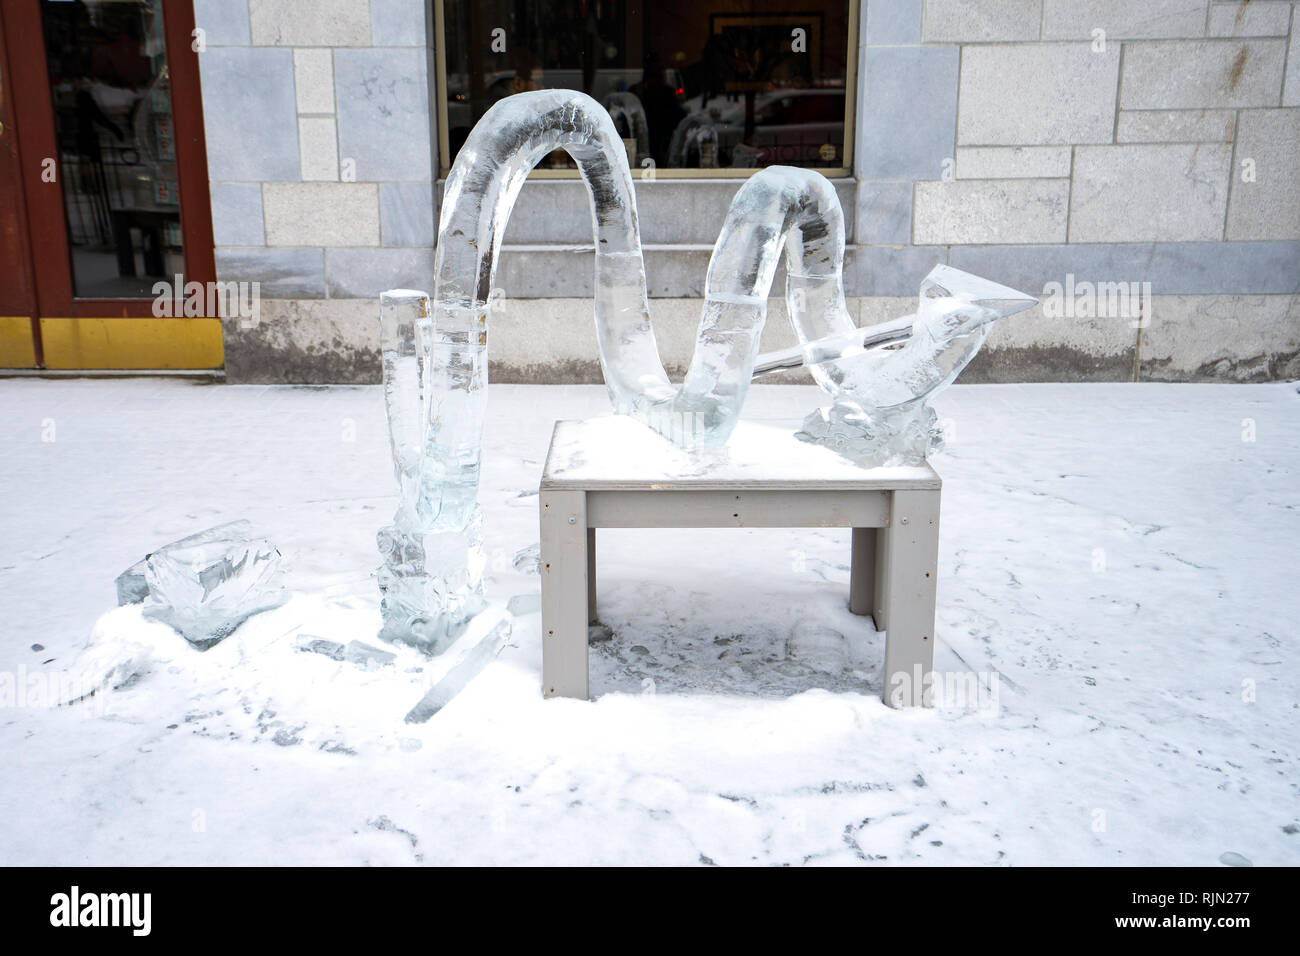 Sculture di ghiaccio realizzata per il 2019 Winterlude festival di Ottawa in Canada. Temperatura calda hanno già iniziato a degradare alcune sculture. Foto Stock